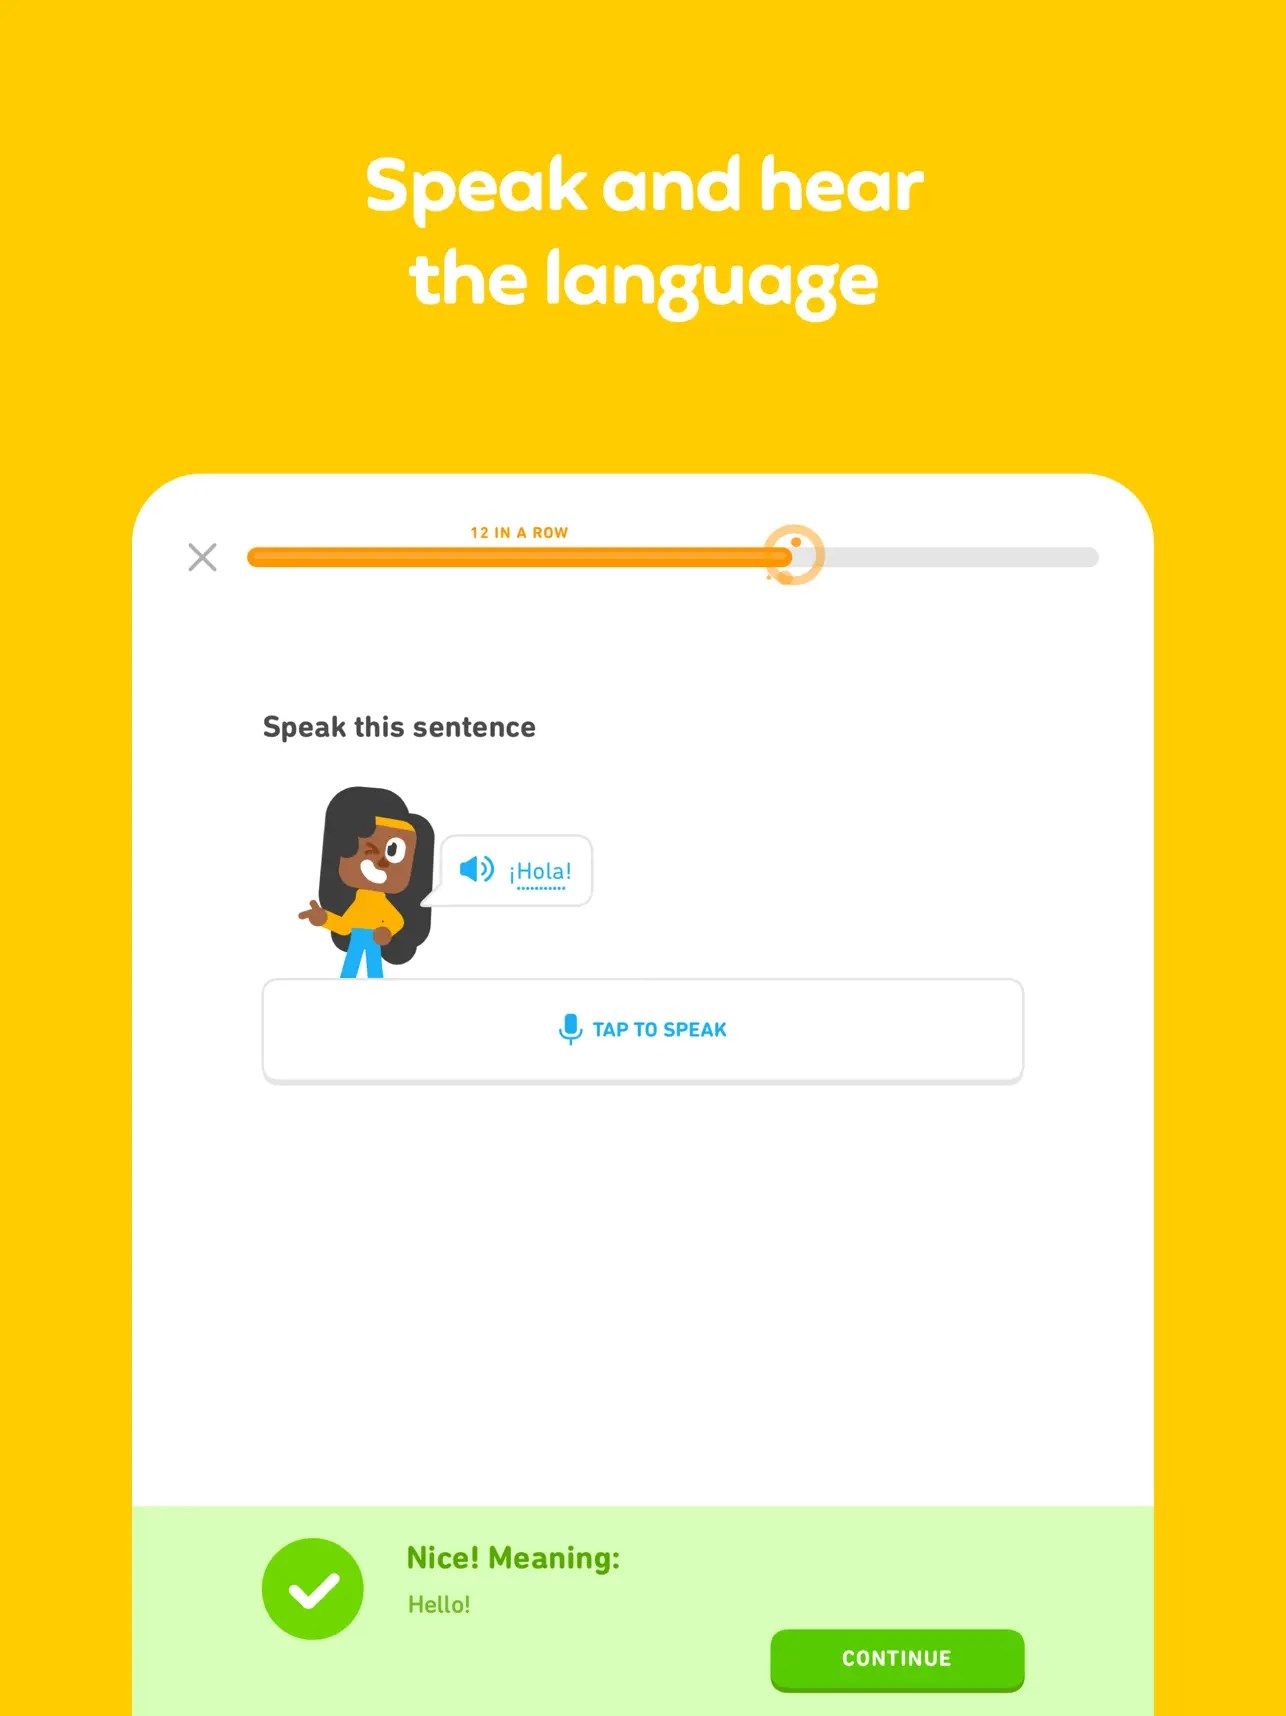 Duolingo - Language Lessons